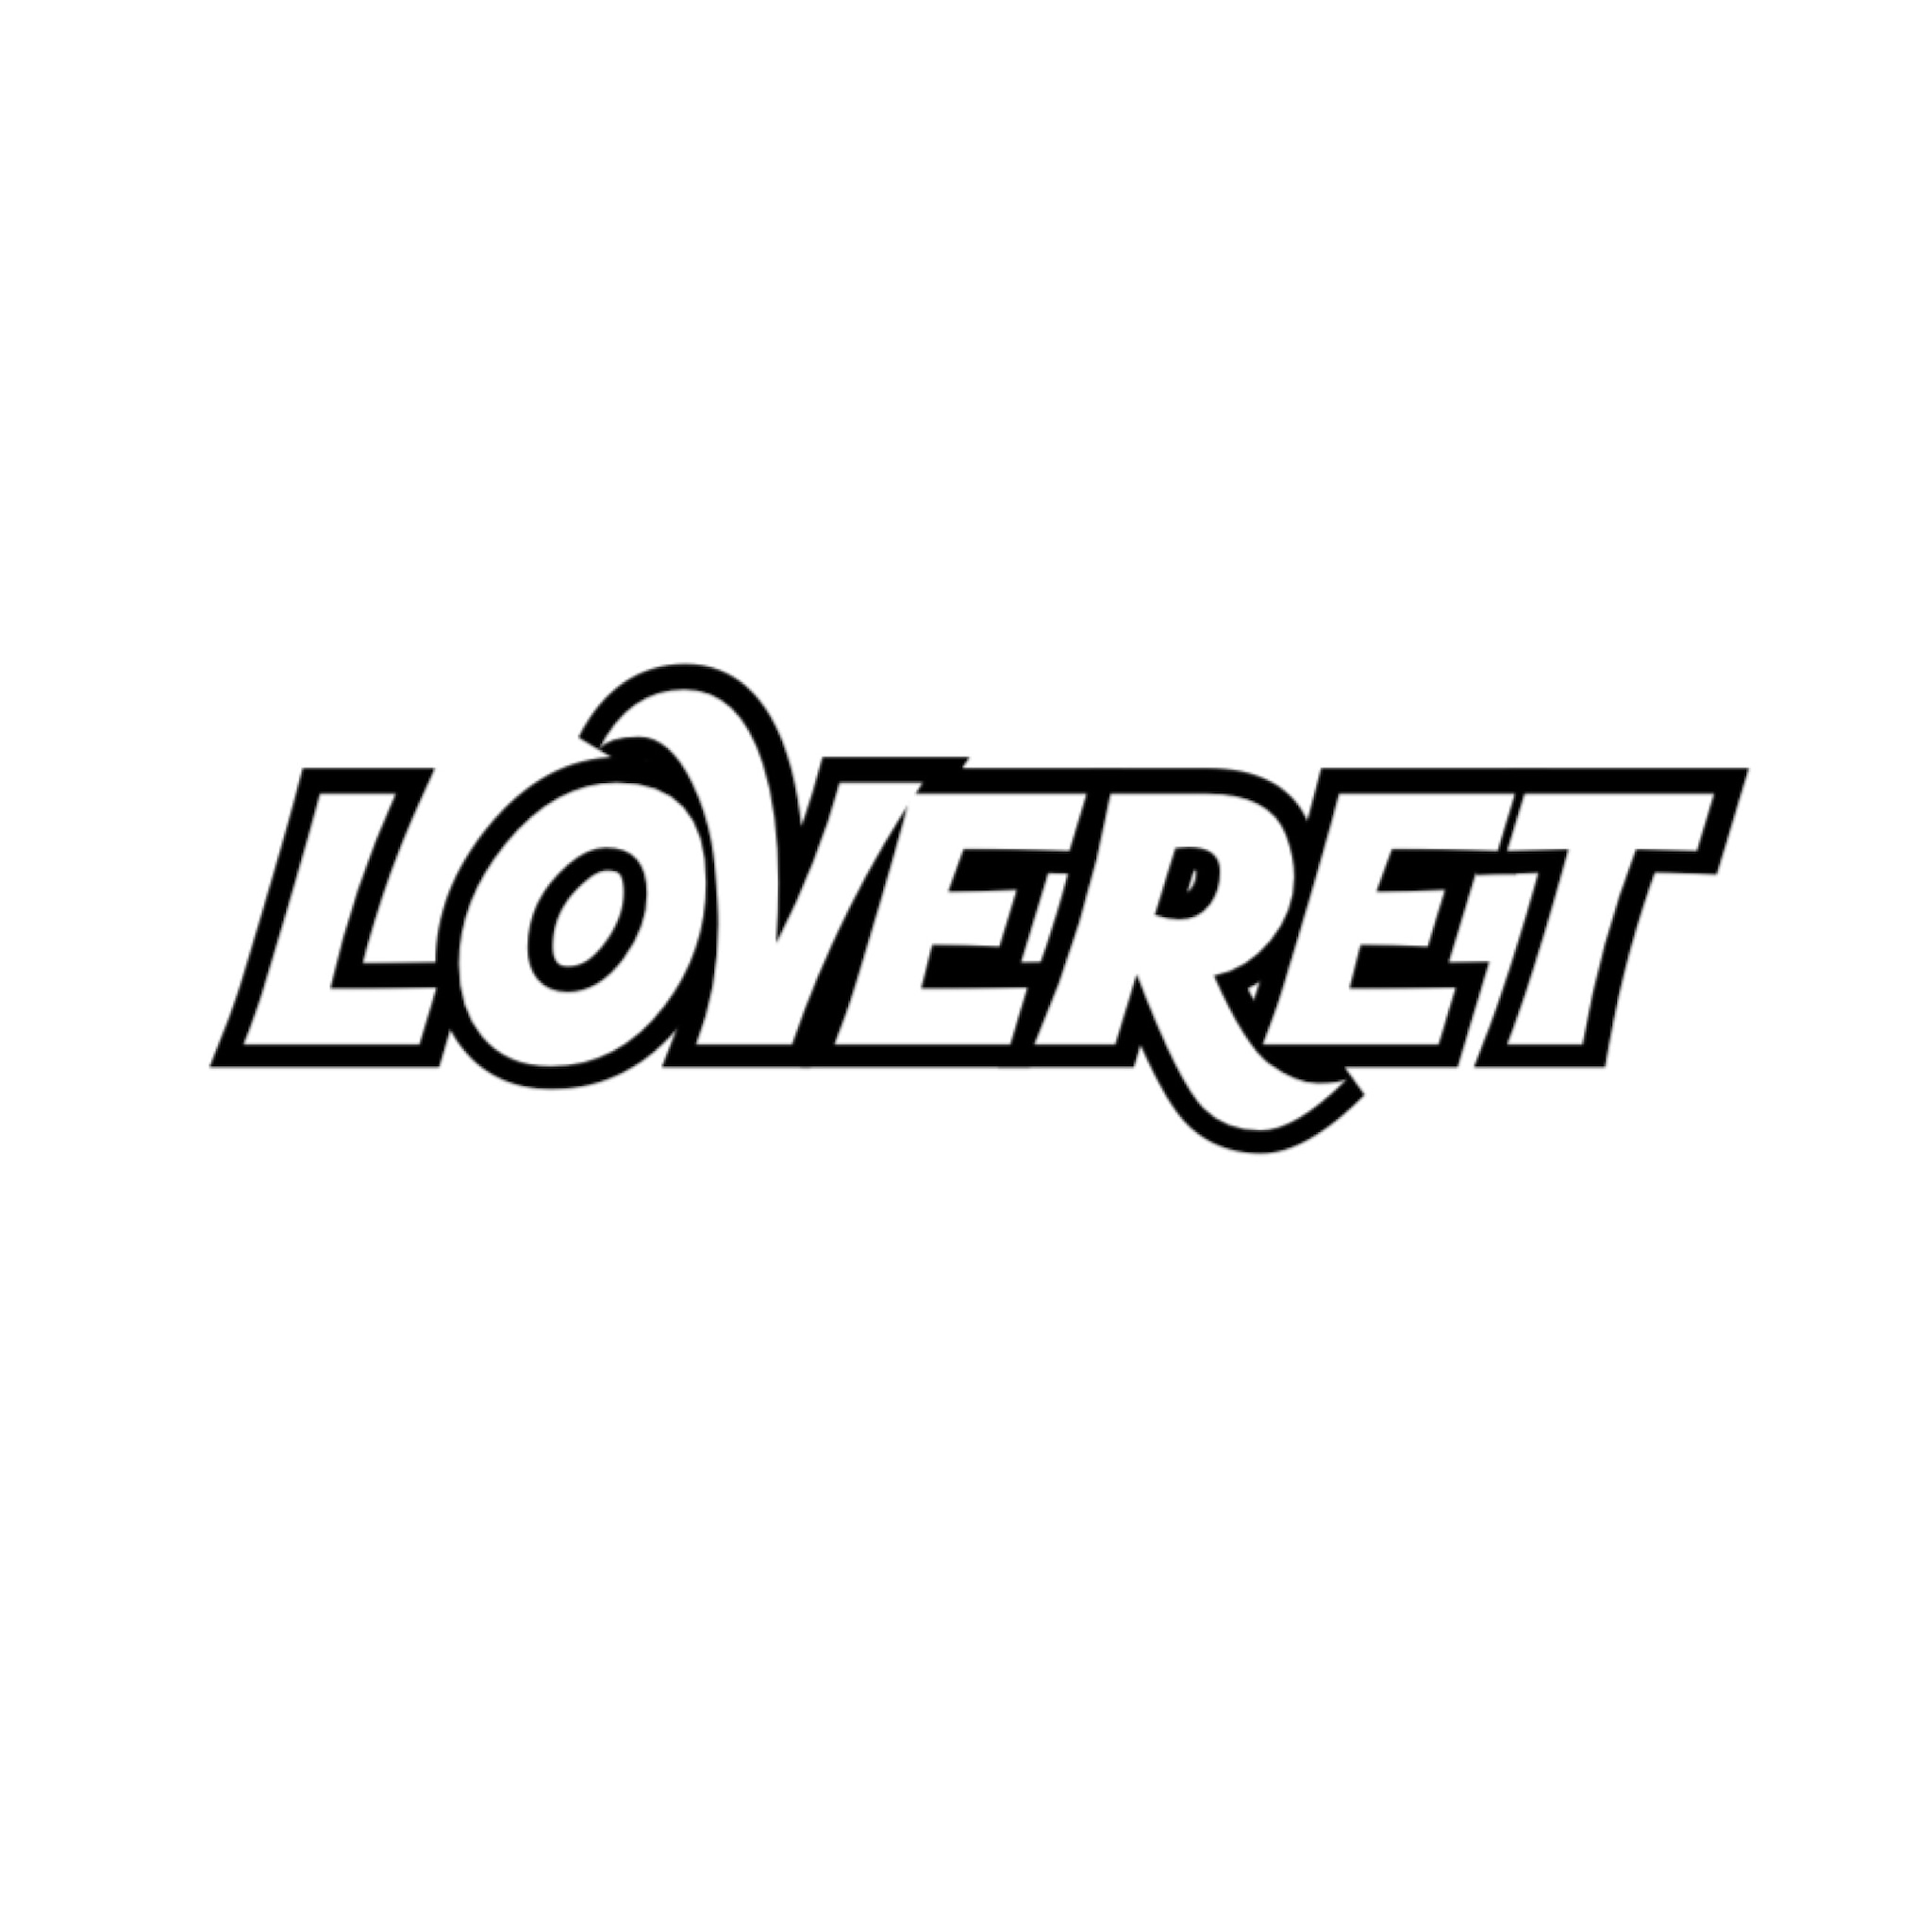 Loveret